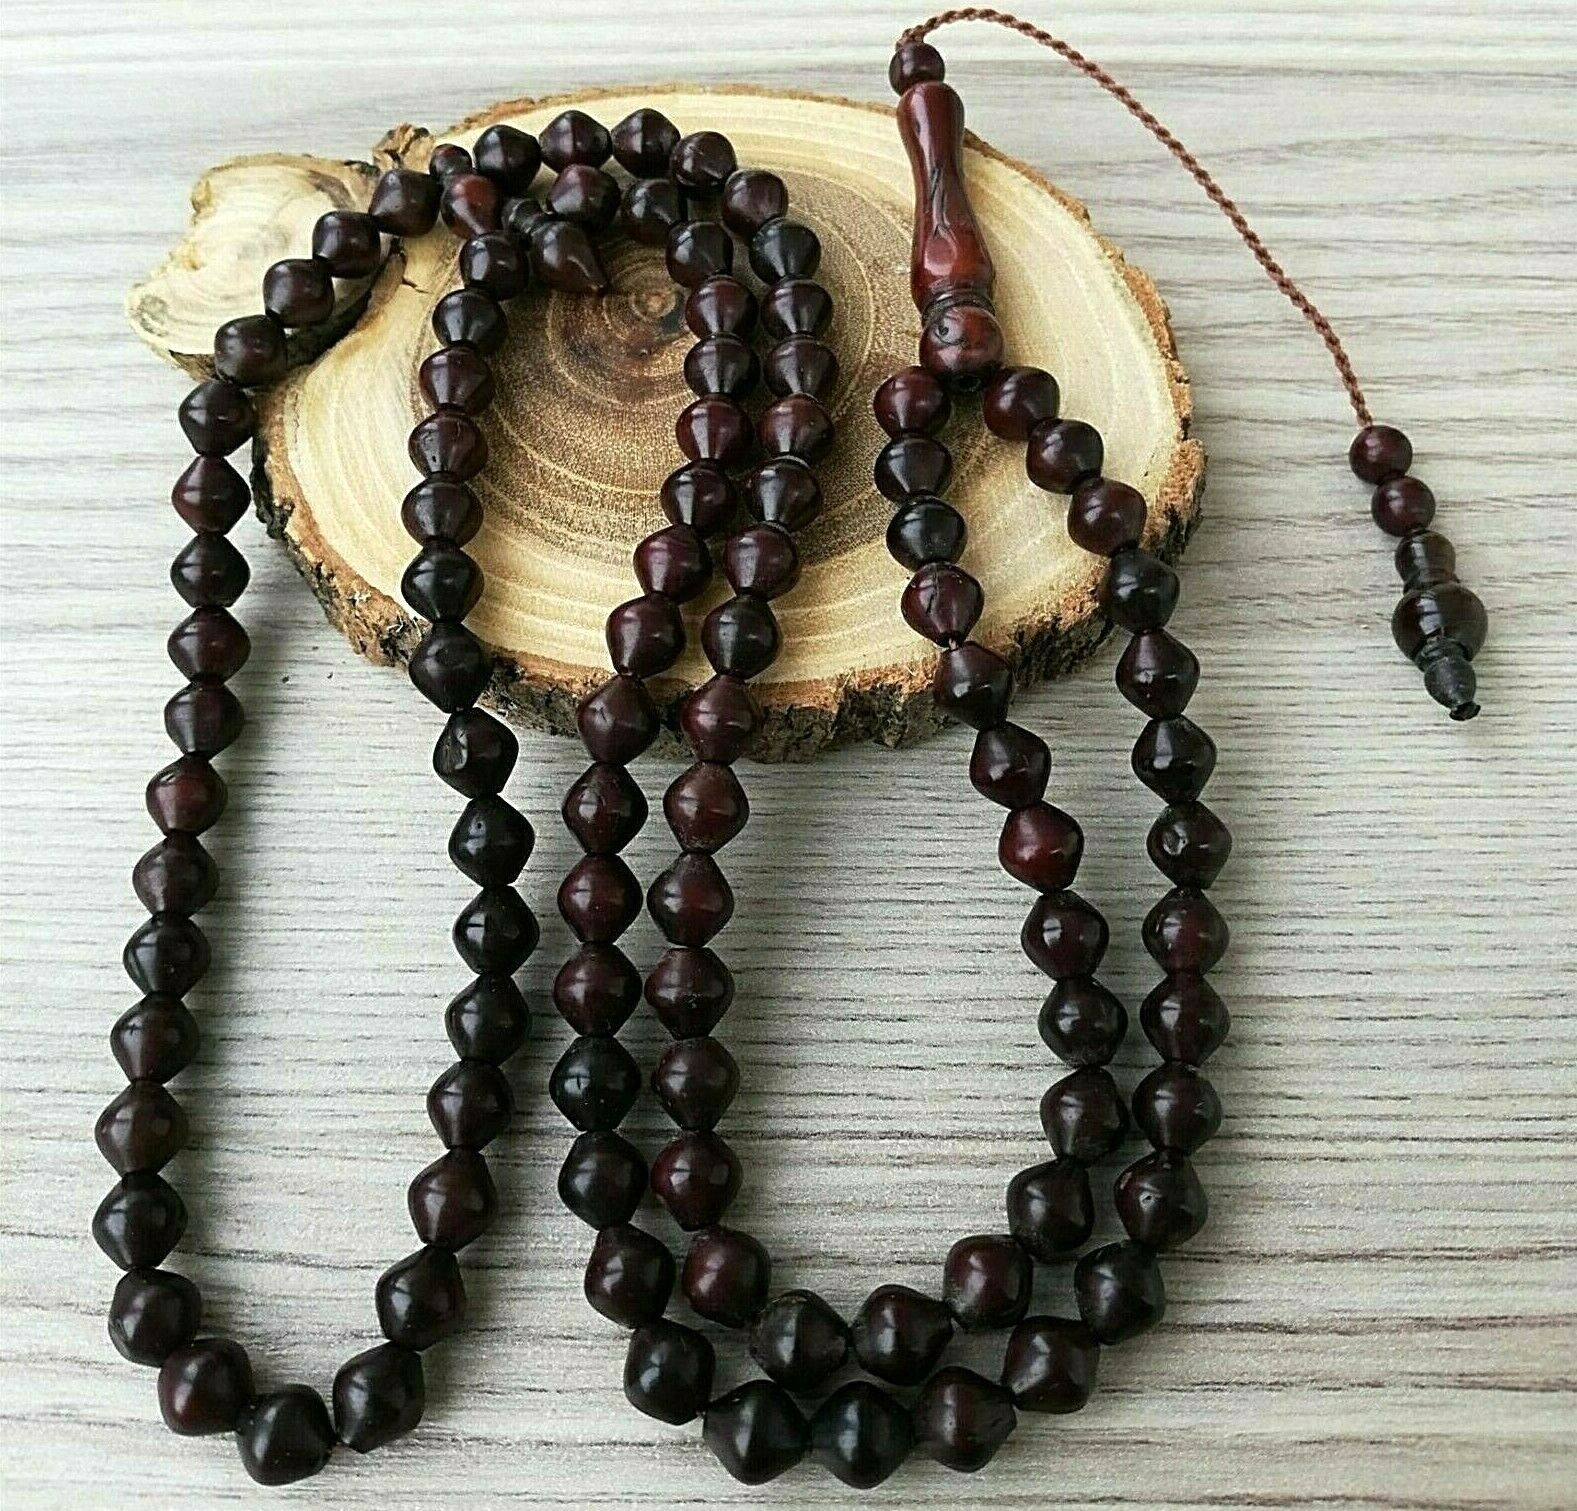 REAL Dark Kuka Coca Tree Islamic Prayer 99 beads Tasbeeh Rosary Misbaha 8x7mm